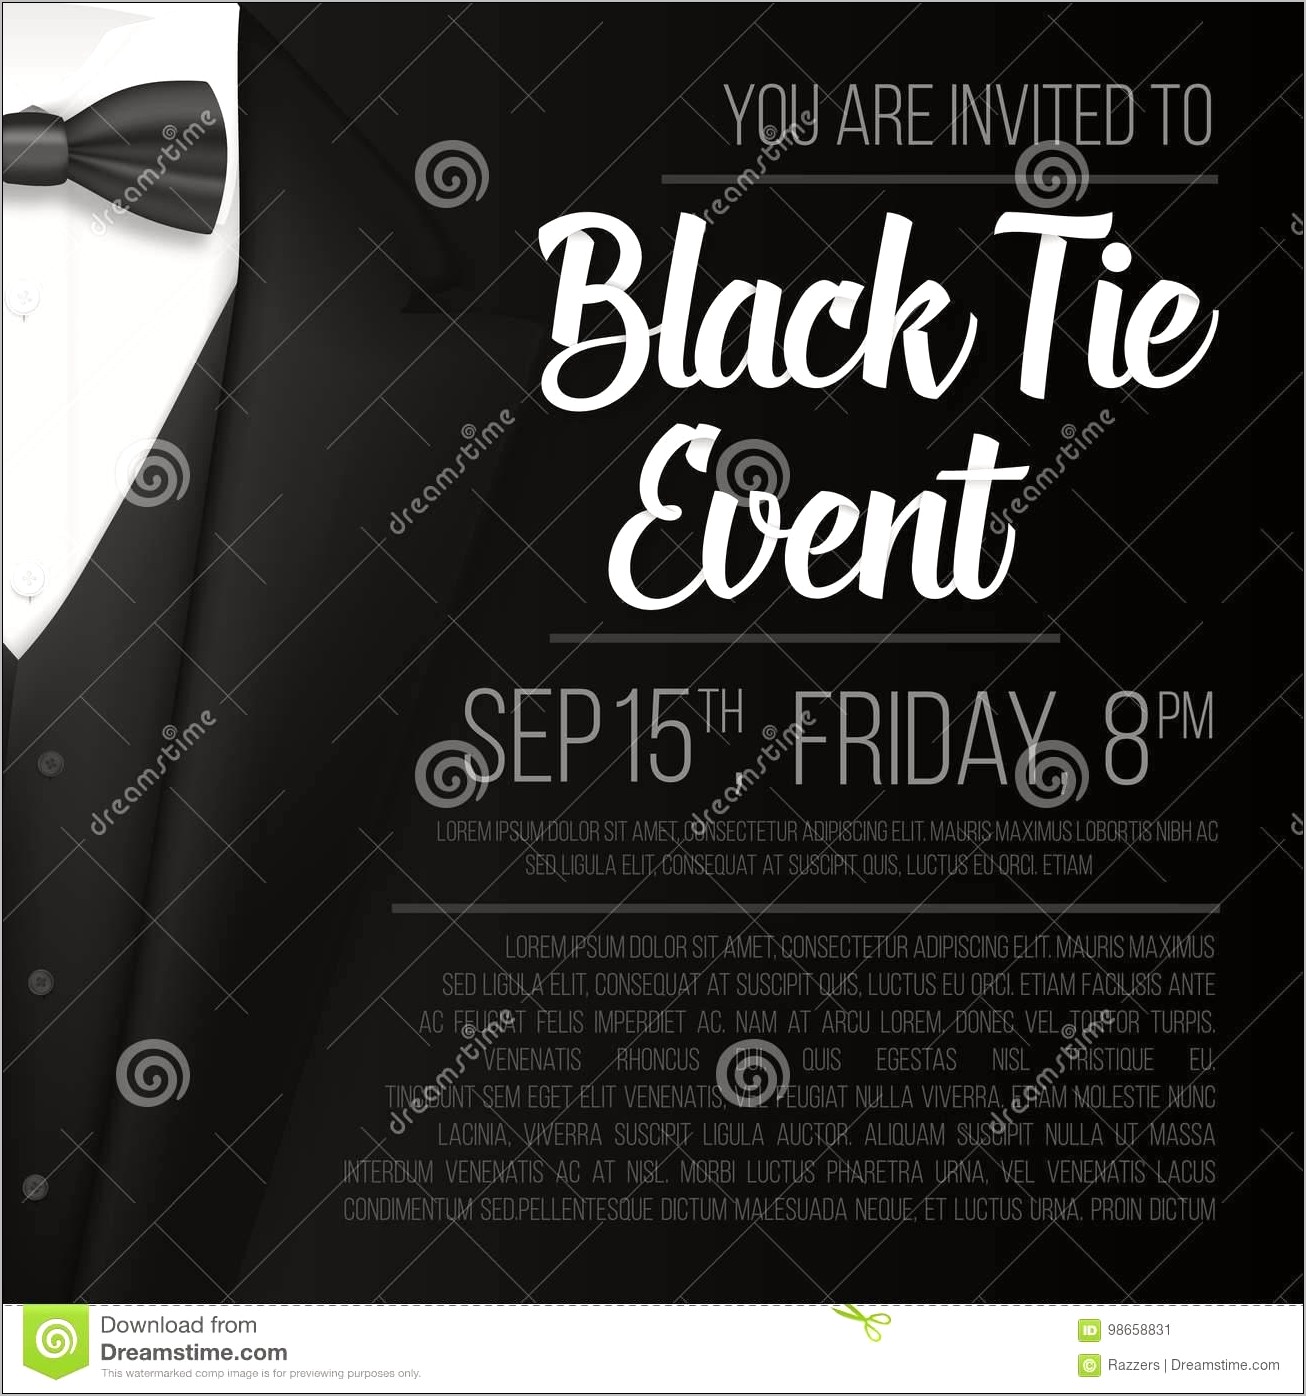 Black Tie Event Invitation Free Template